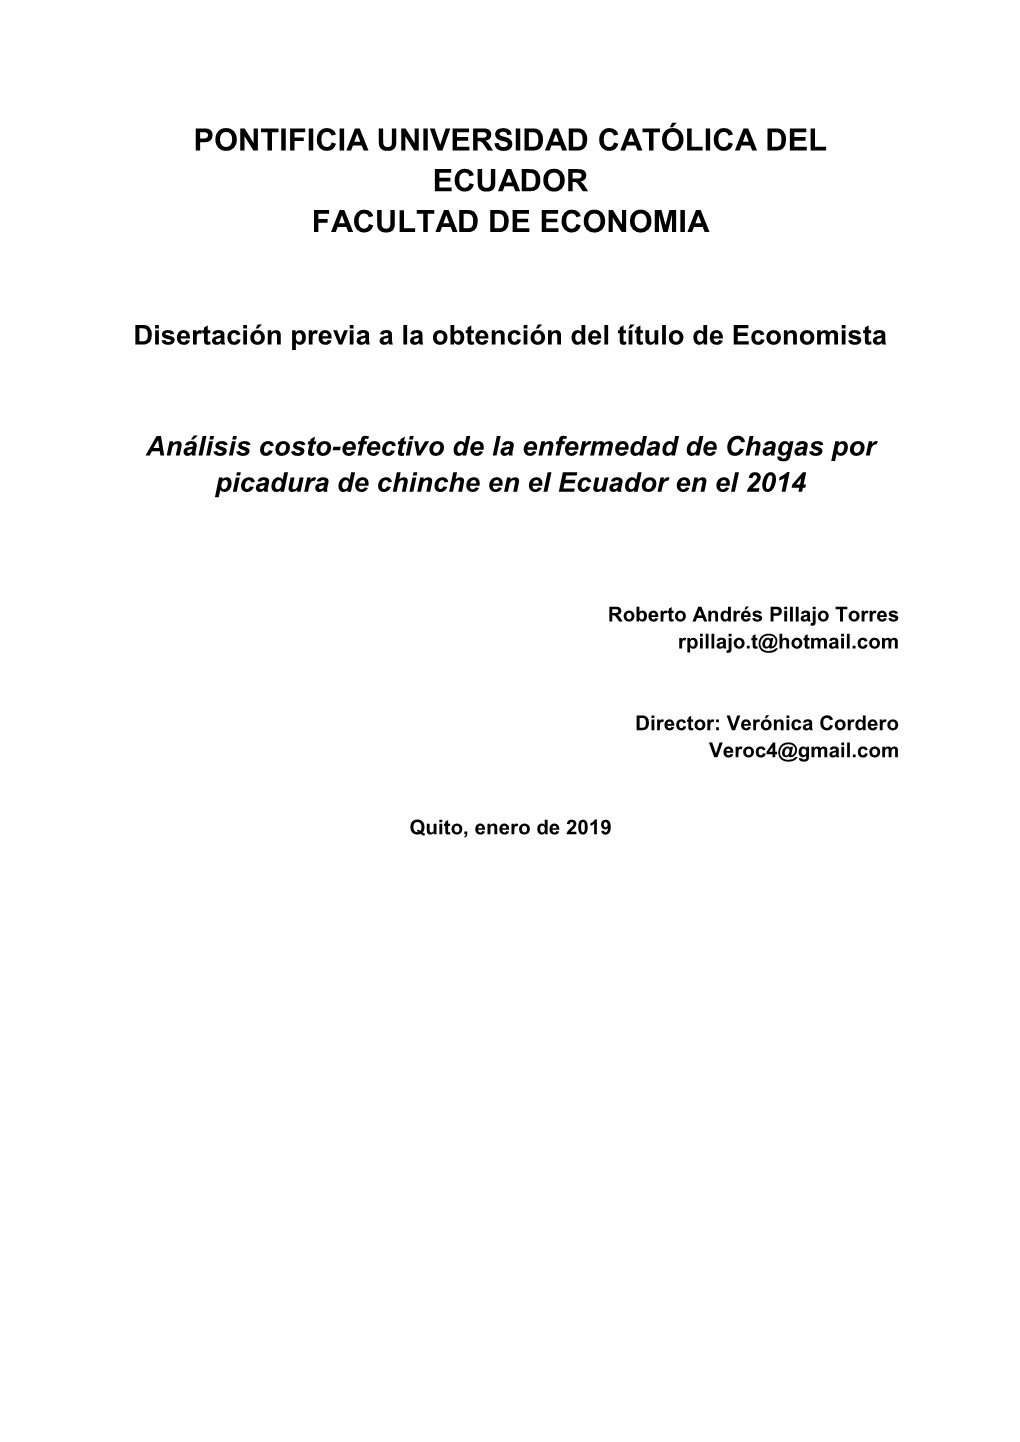 Disertación Previa a La Obtención Del Título De Economista Análisis Costo-Efectivo De La Enfermedad De Chagas Por Picadura De Chinche En El Ecuador En El 2014